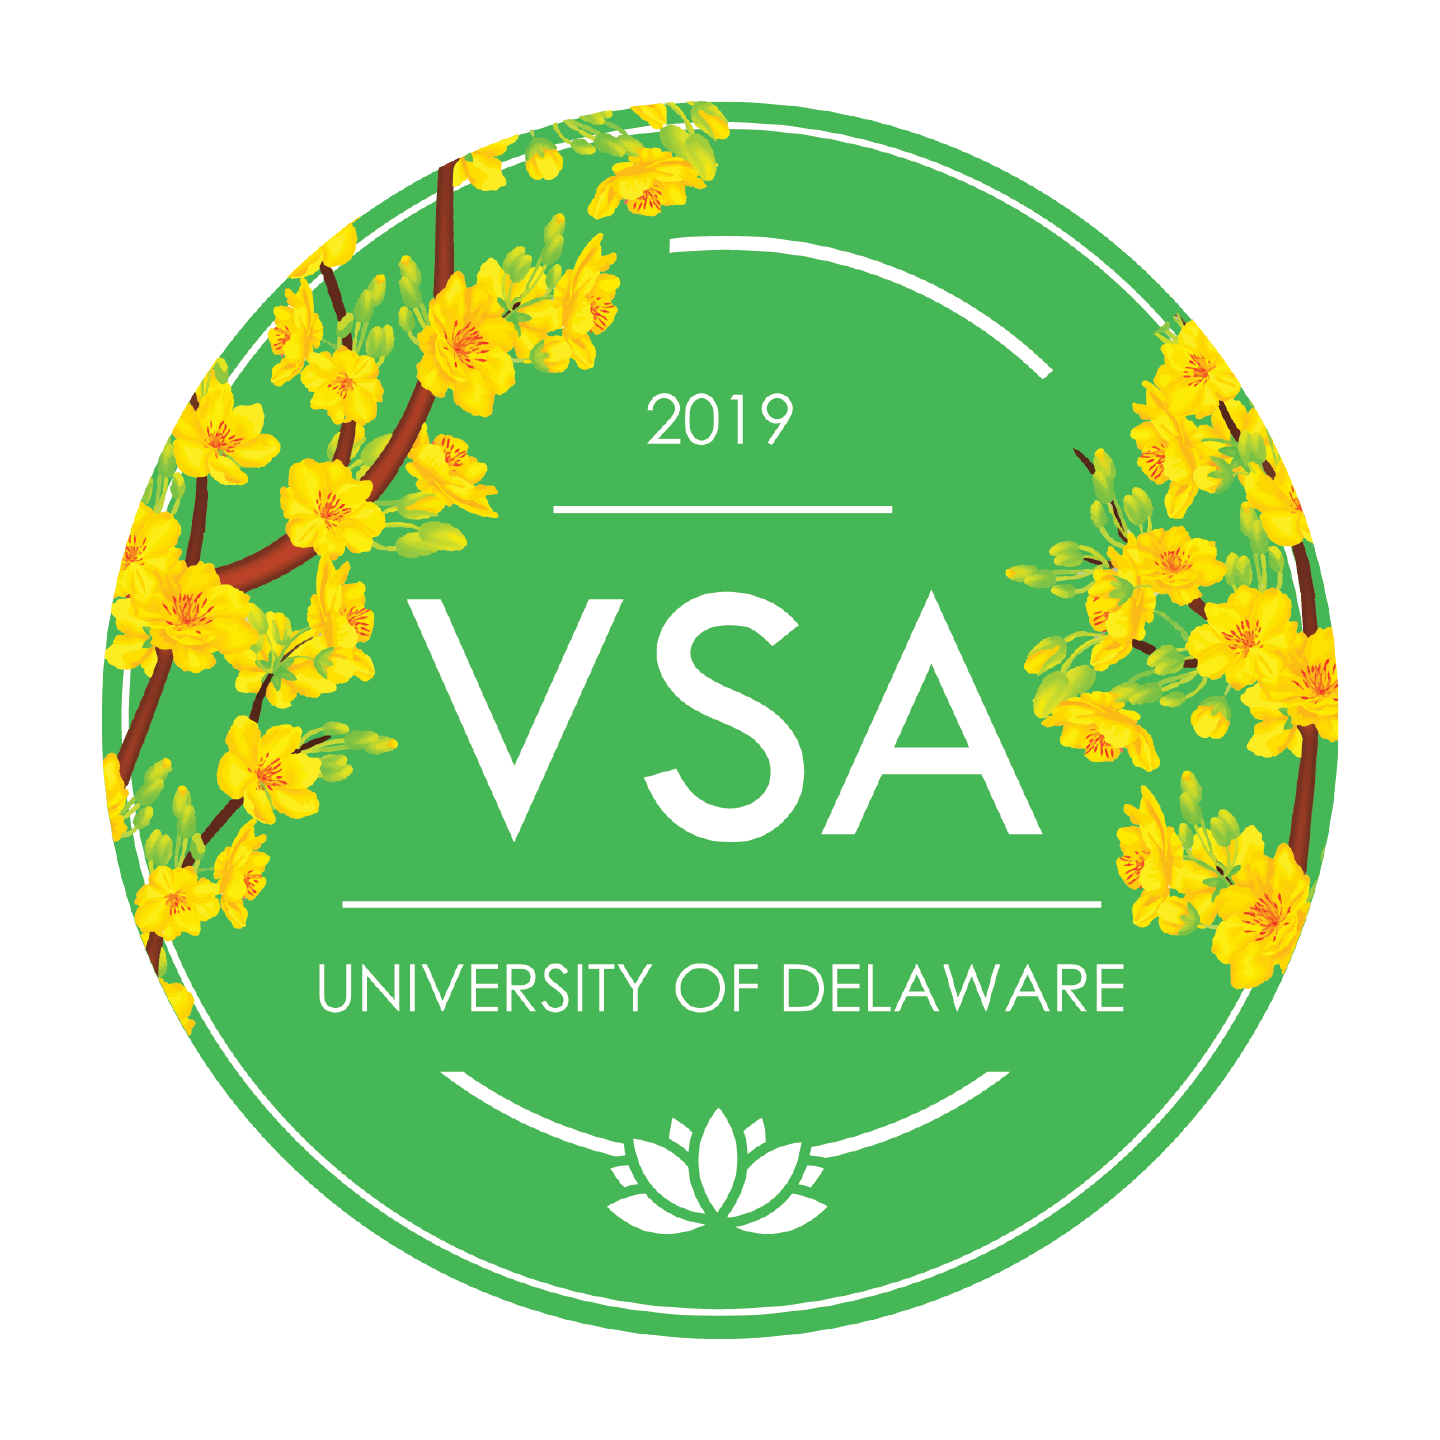 VSA University of Delaware